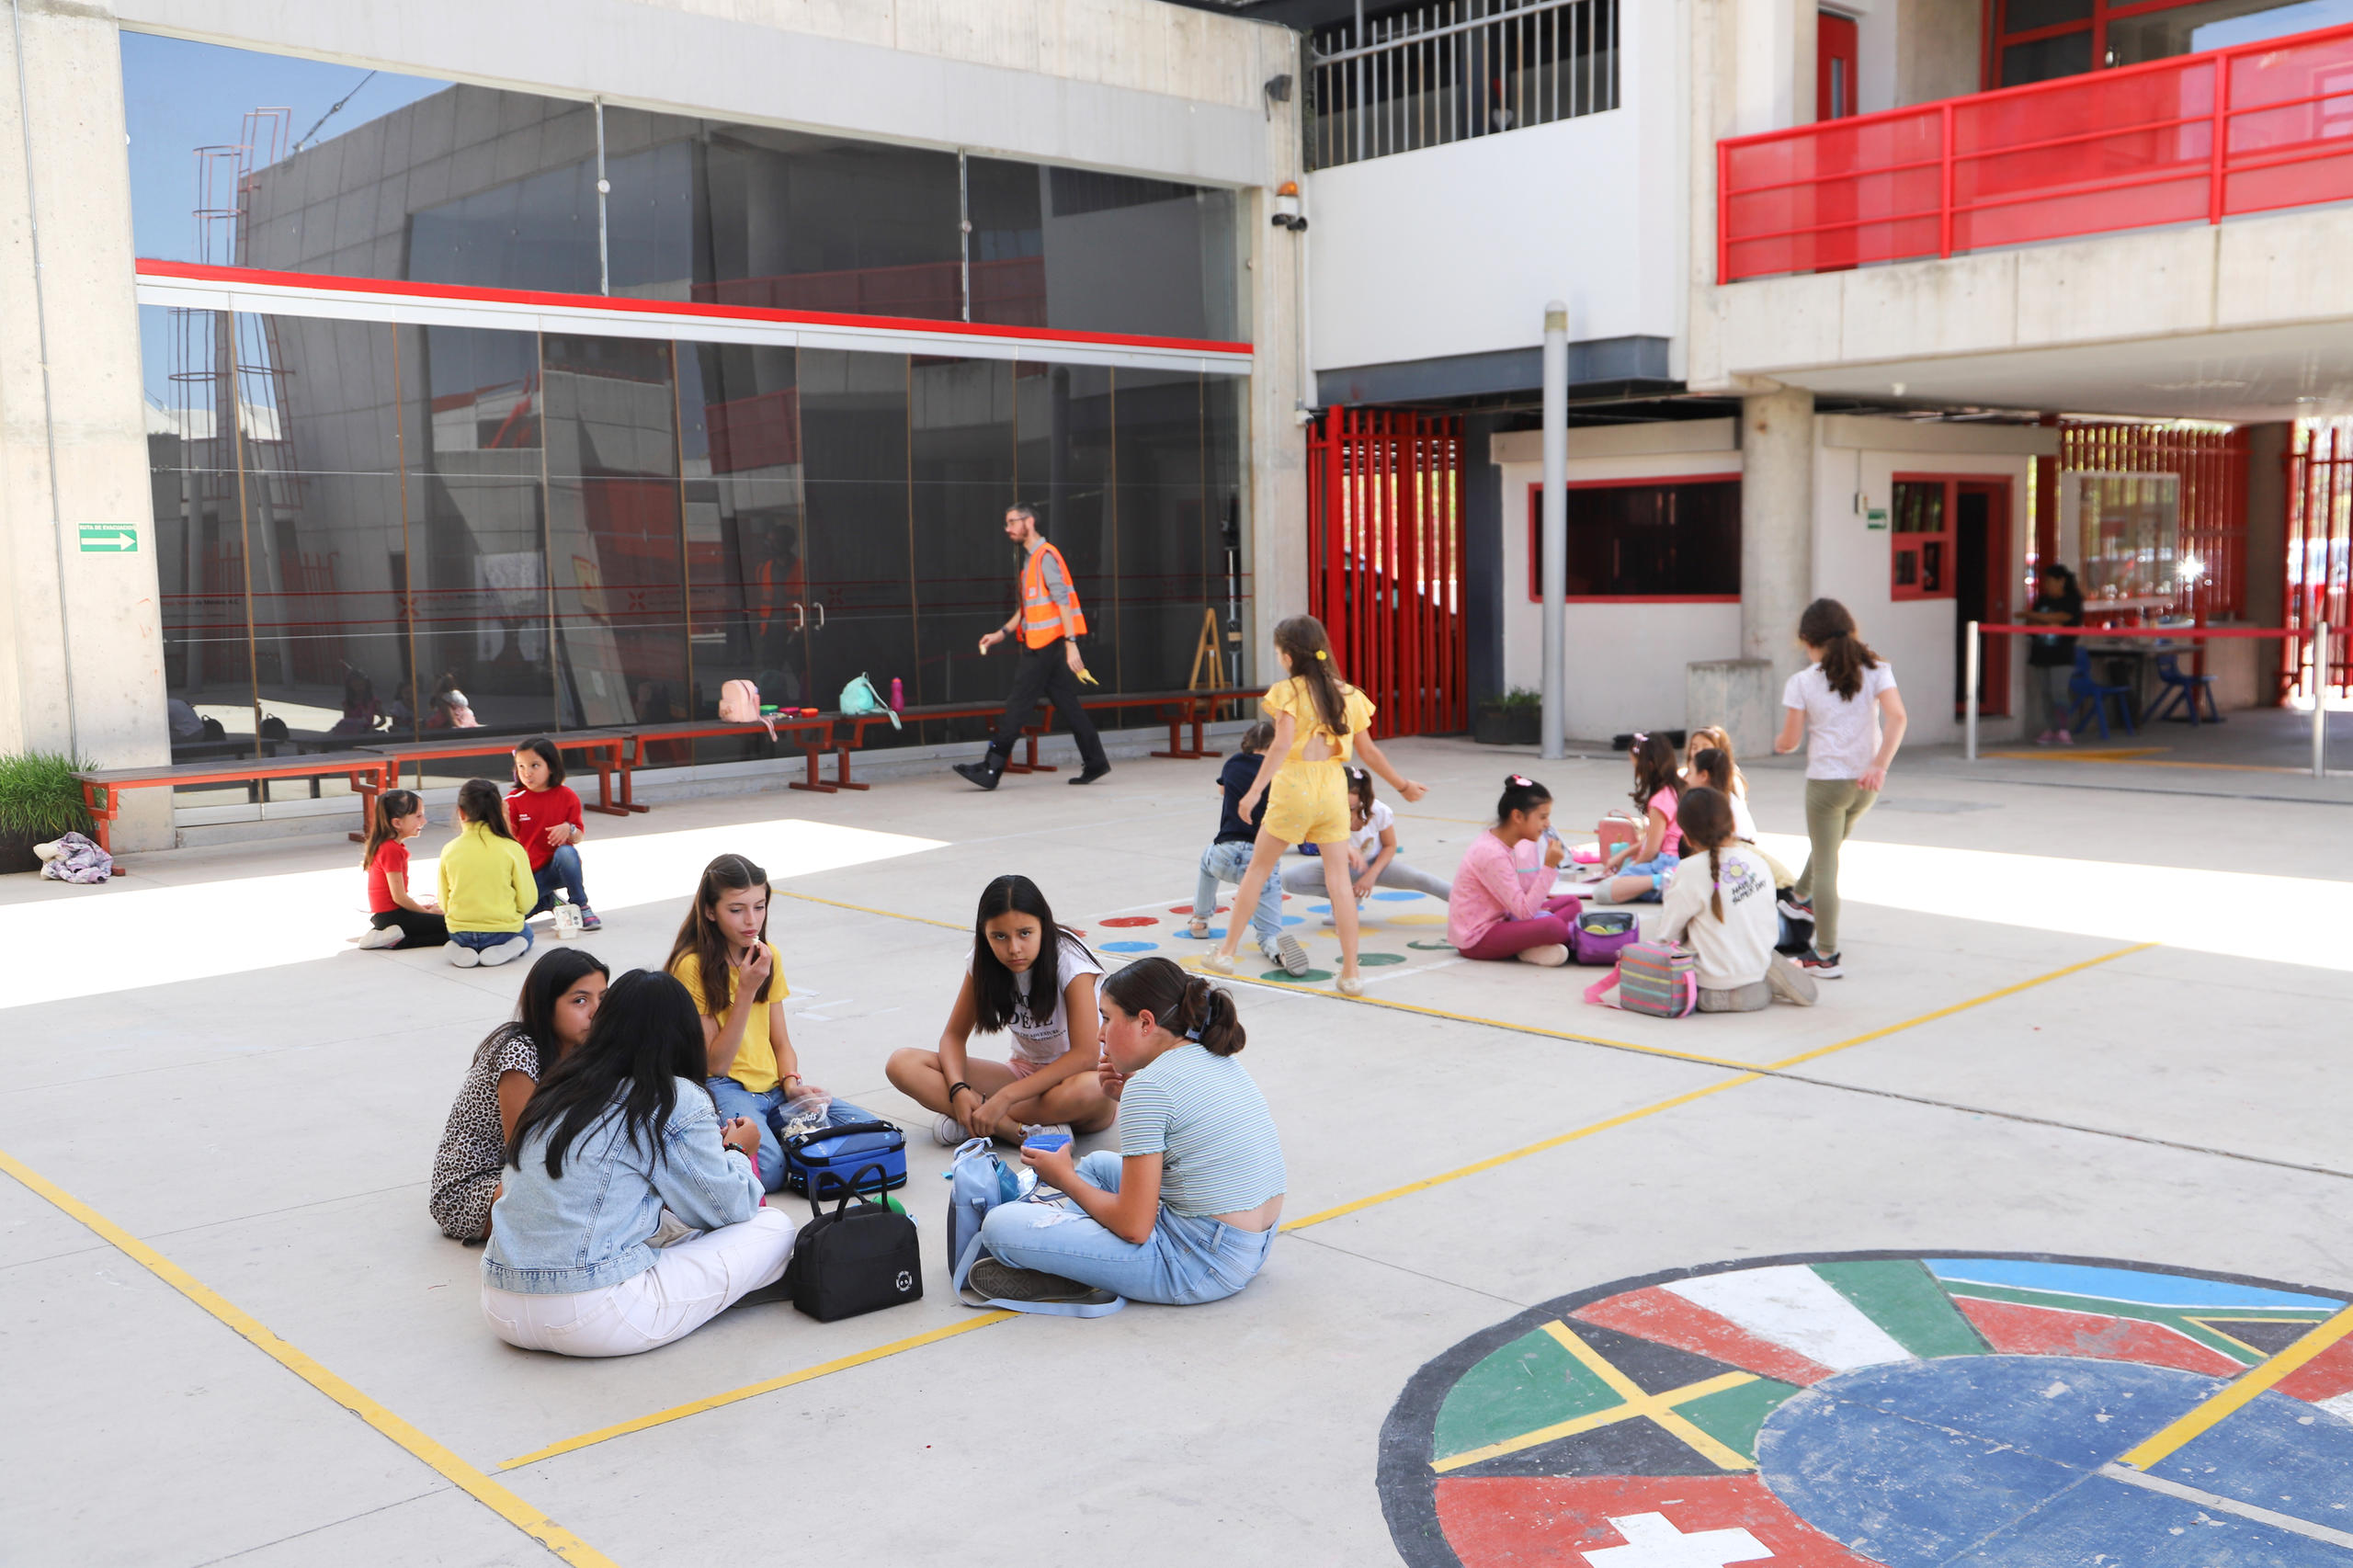 niños jugando en el patio de un colegio en México.